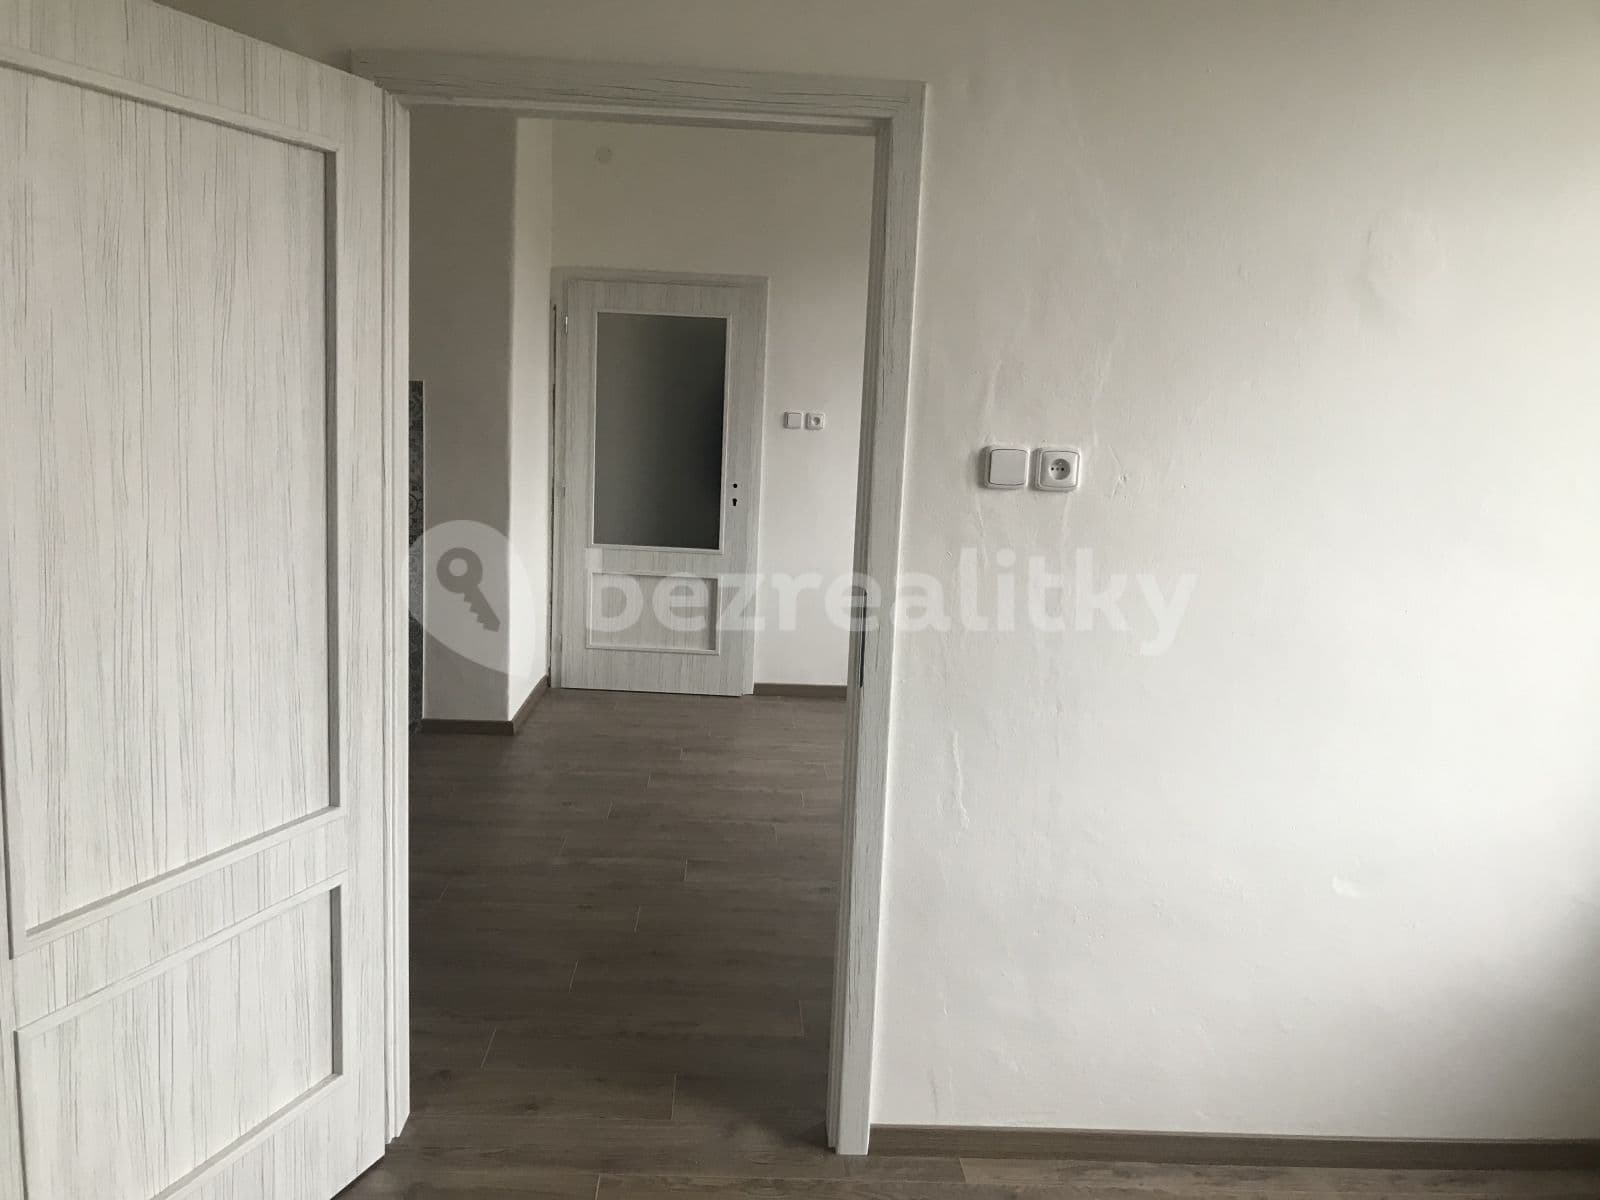 1 bedroom with open-plan kitchen flat to rent, 46 m², Masarykova třída, Olomouc, Olomoucký Region